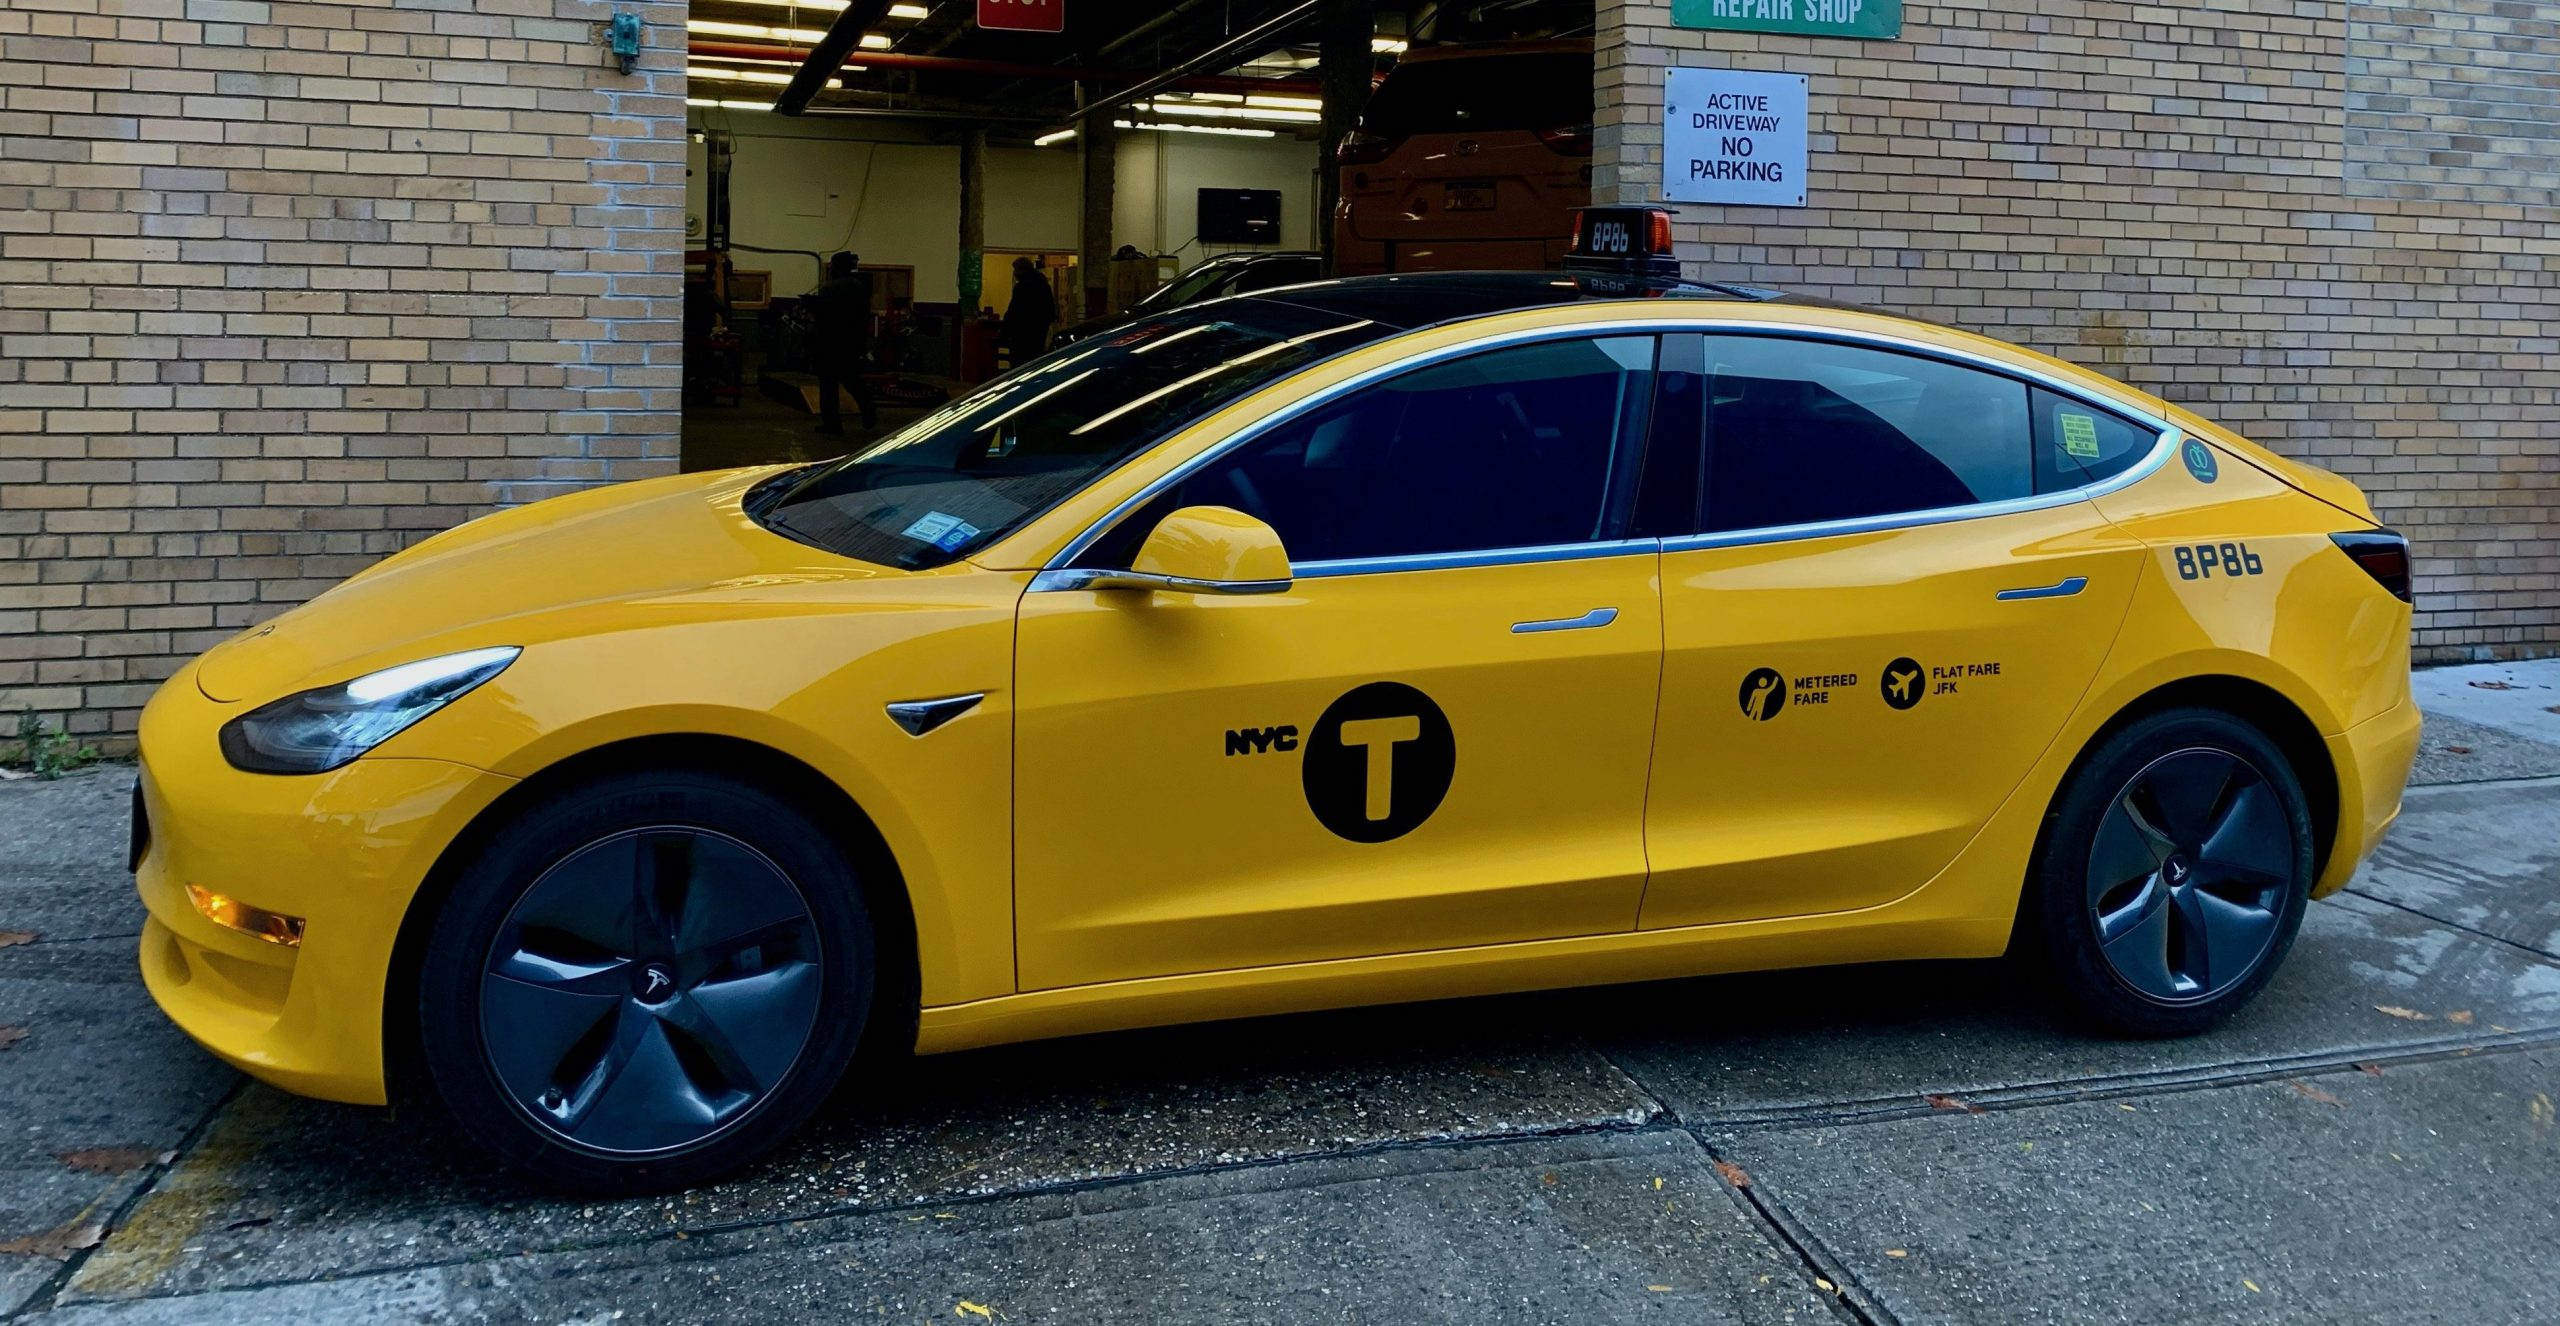 Ölümlü kazanın ardından Tesla’nın taksi projesi askıya alındı